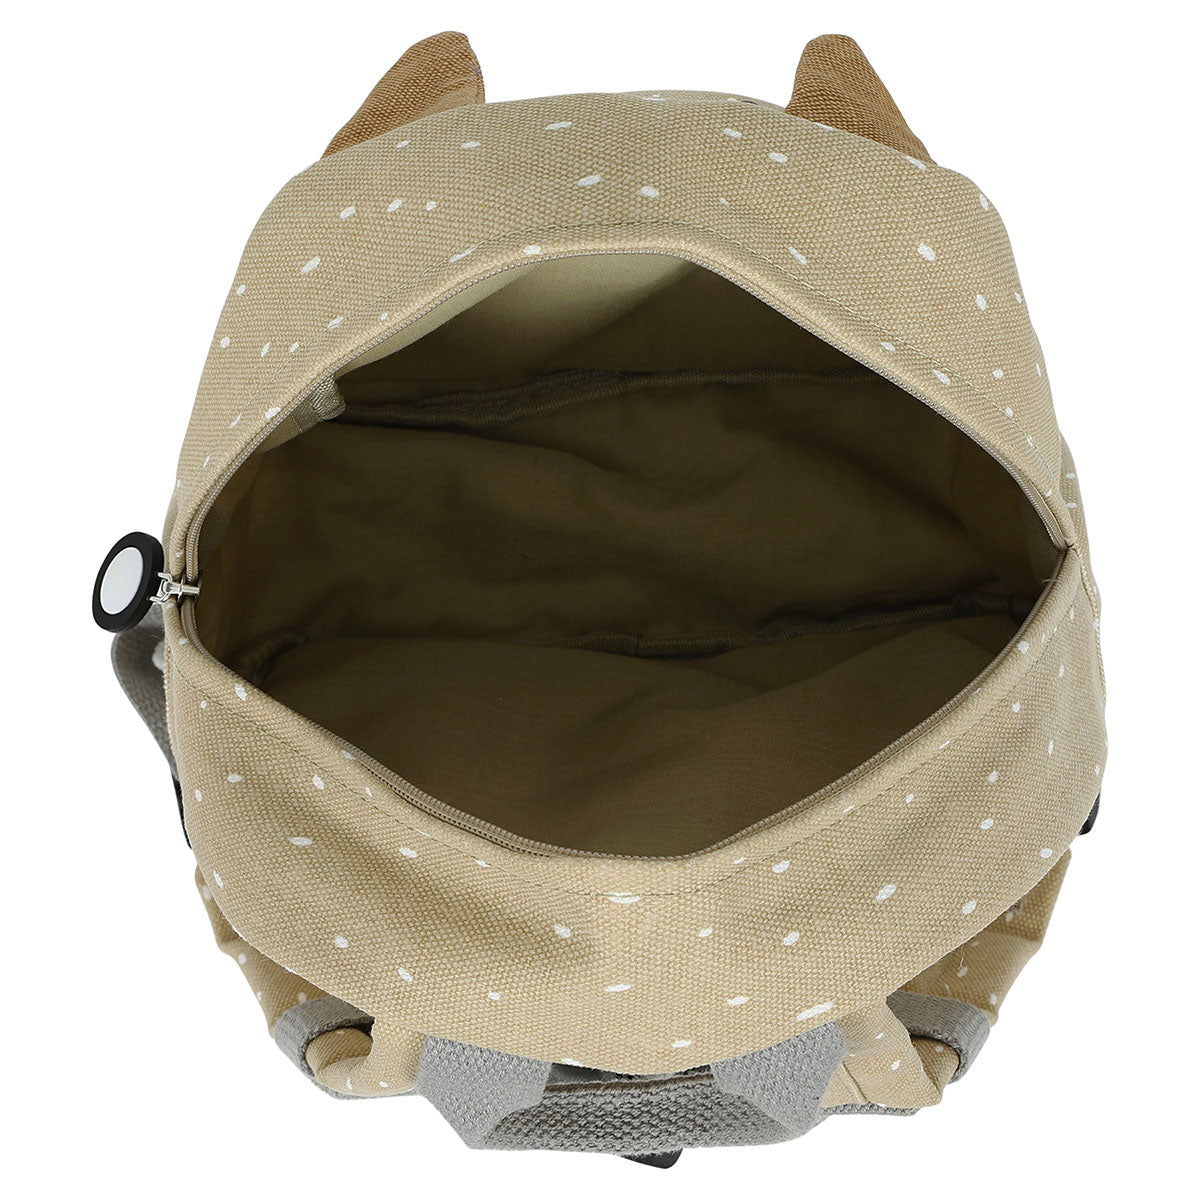 Met de Trixie Mr. Dog rugzak klein ben je klaar voor avontuur! In deze zandkleurige schooltas kan je al je spulletjes kwijt voor een dagje weg. De rugzak komt in de vorm van een hondje. VanZus.